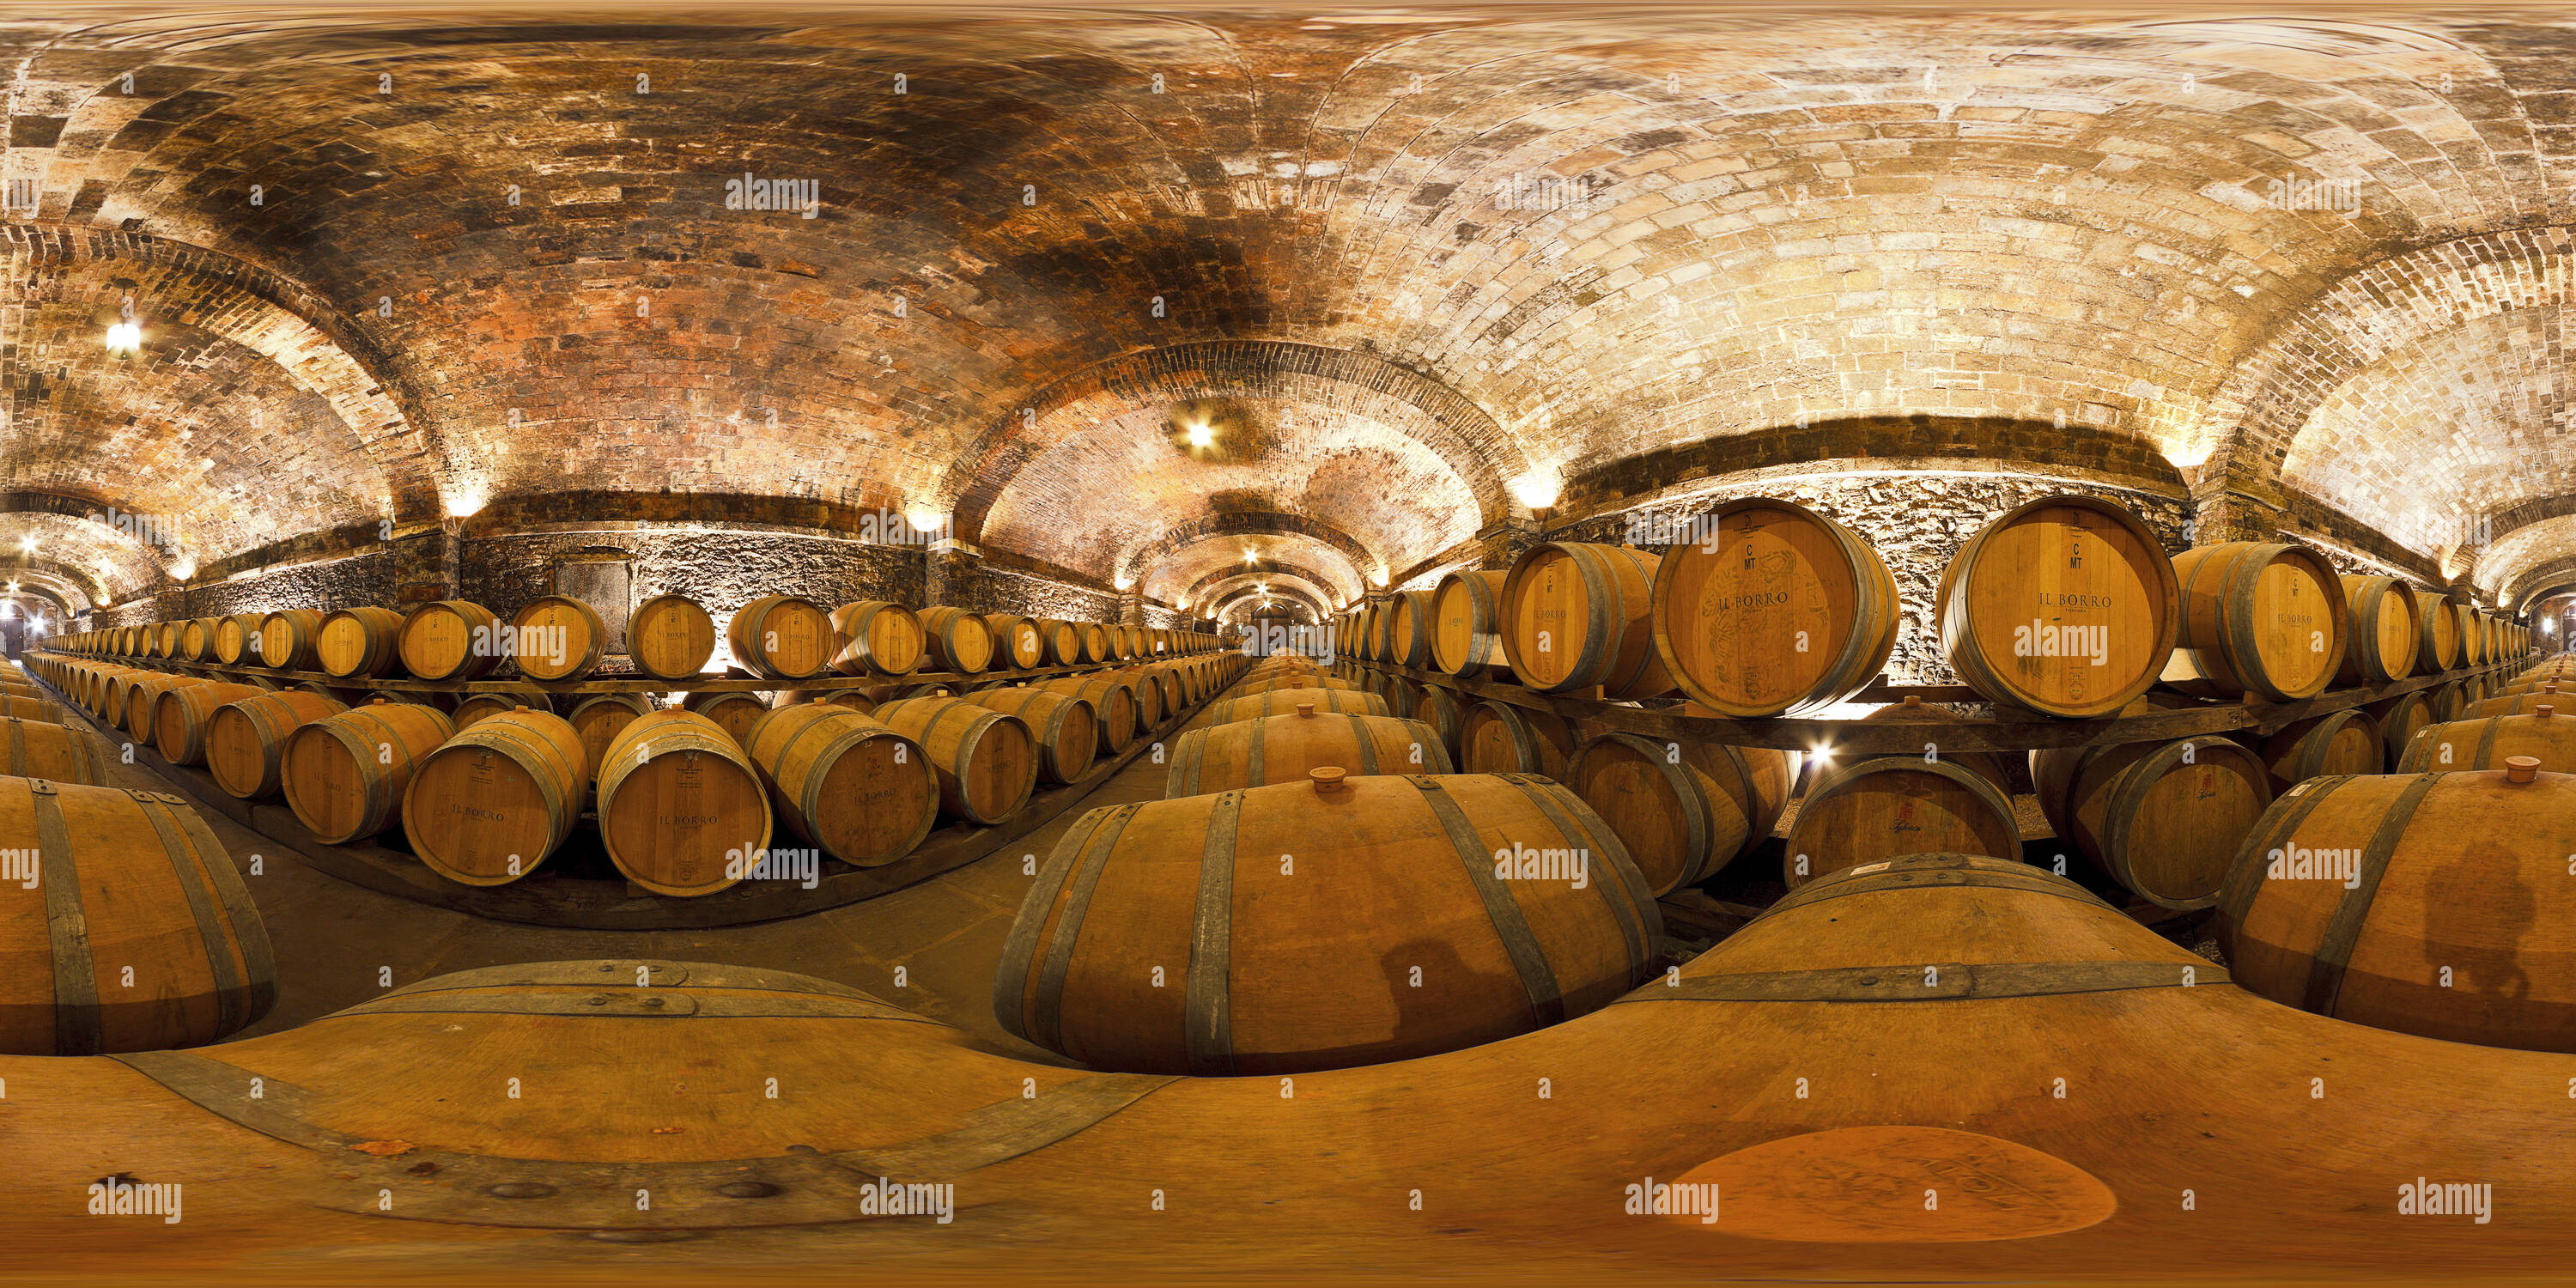 360 degree panoramic view of il borro wine cellar